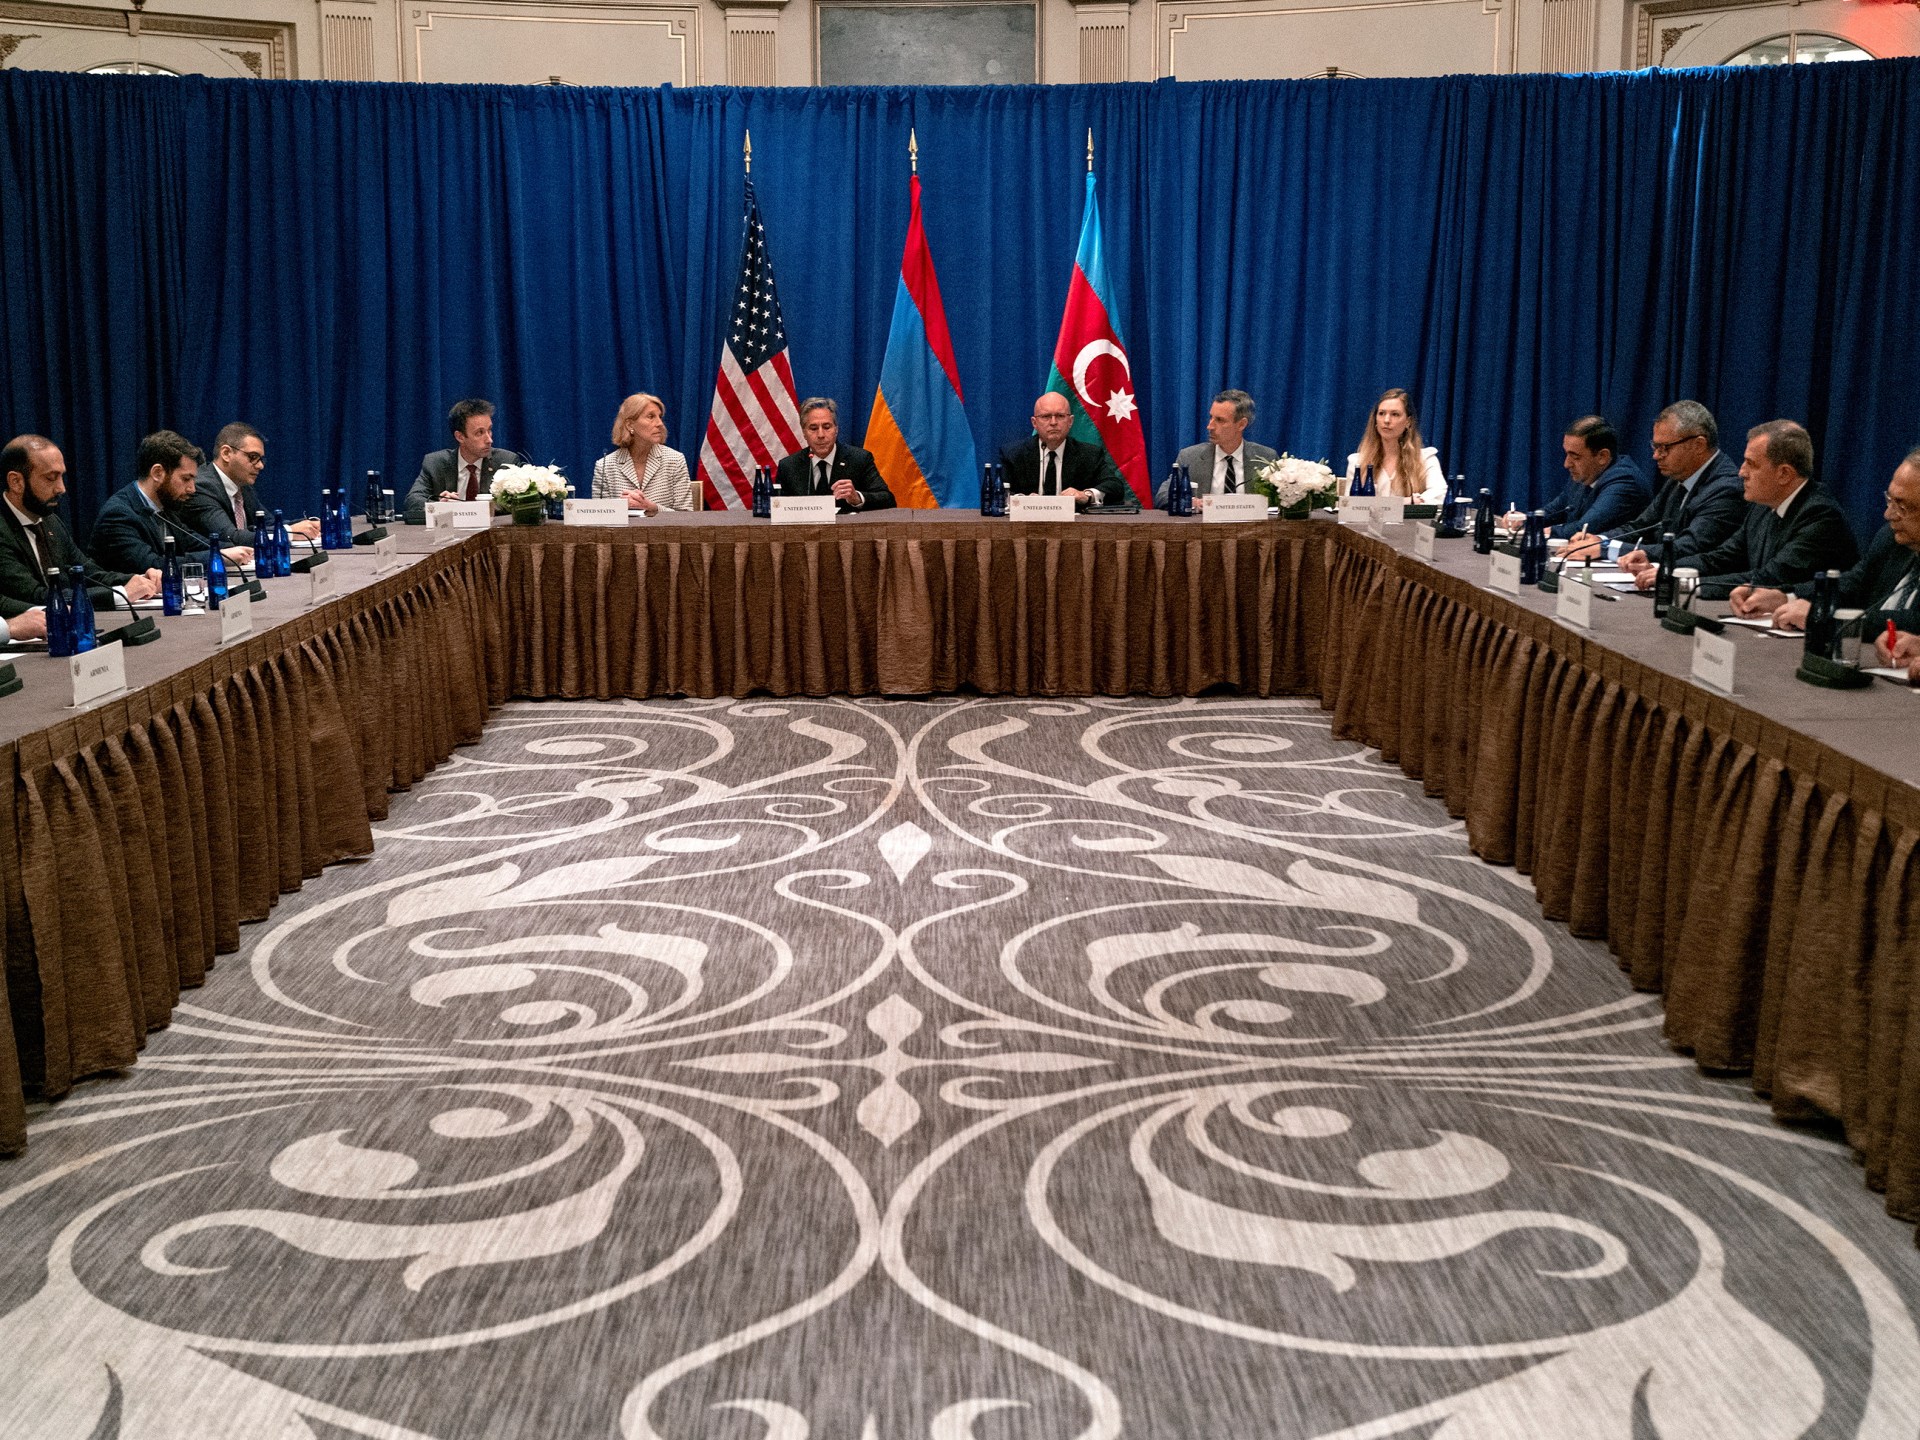 blinken-urges-diplomacy-as-armenia-azerbaijan-fms-meet